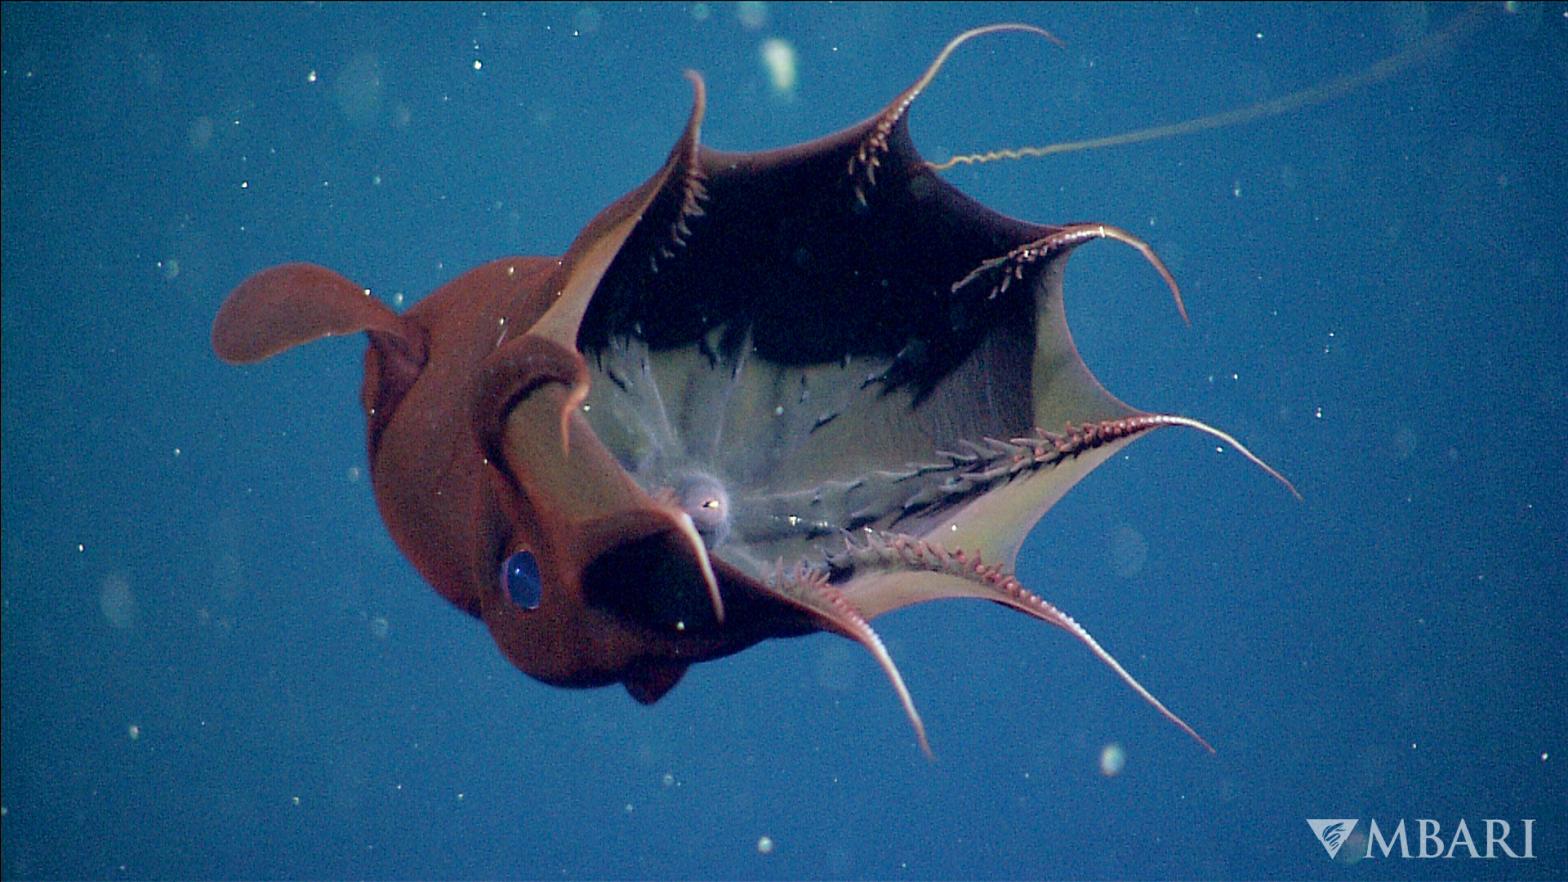 A rare image of a vampire squid. (Image: © 2010 Monterey Bay Aquarium Research Institute)